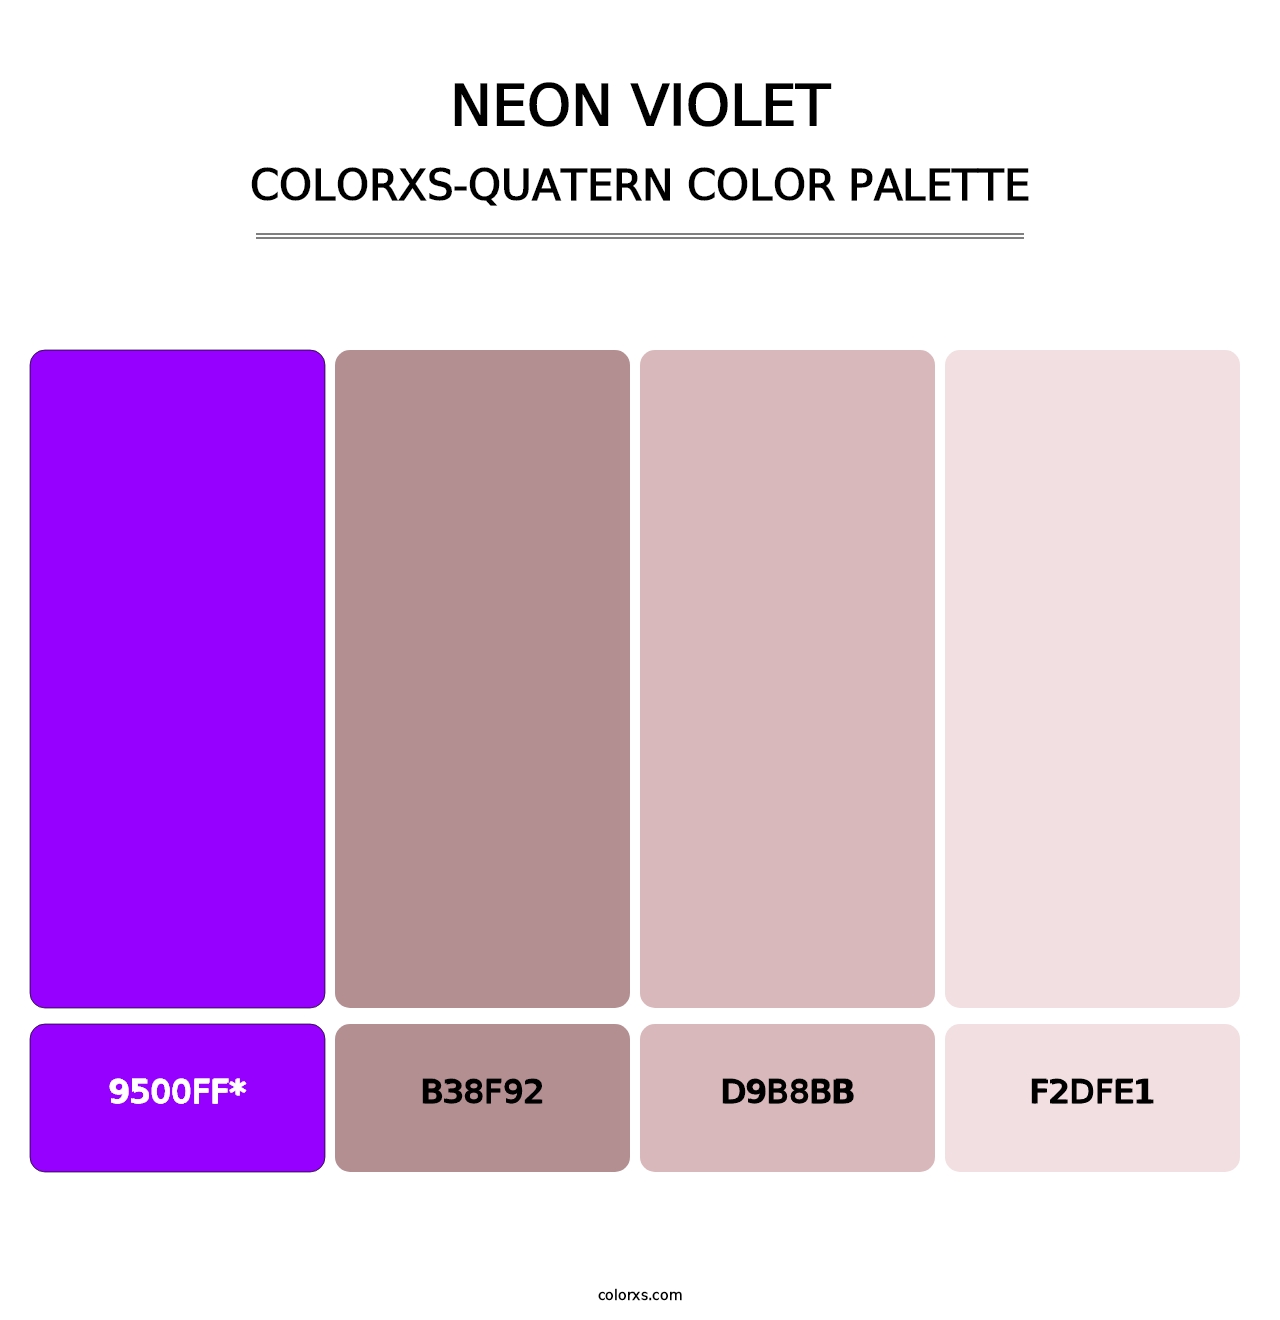 Neon Violet - Colorxs Quatern Palette